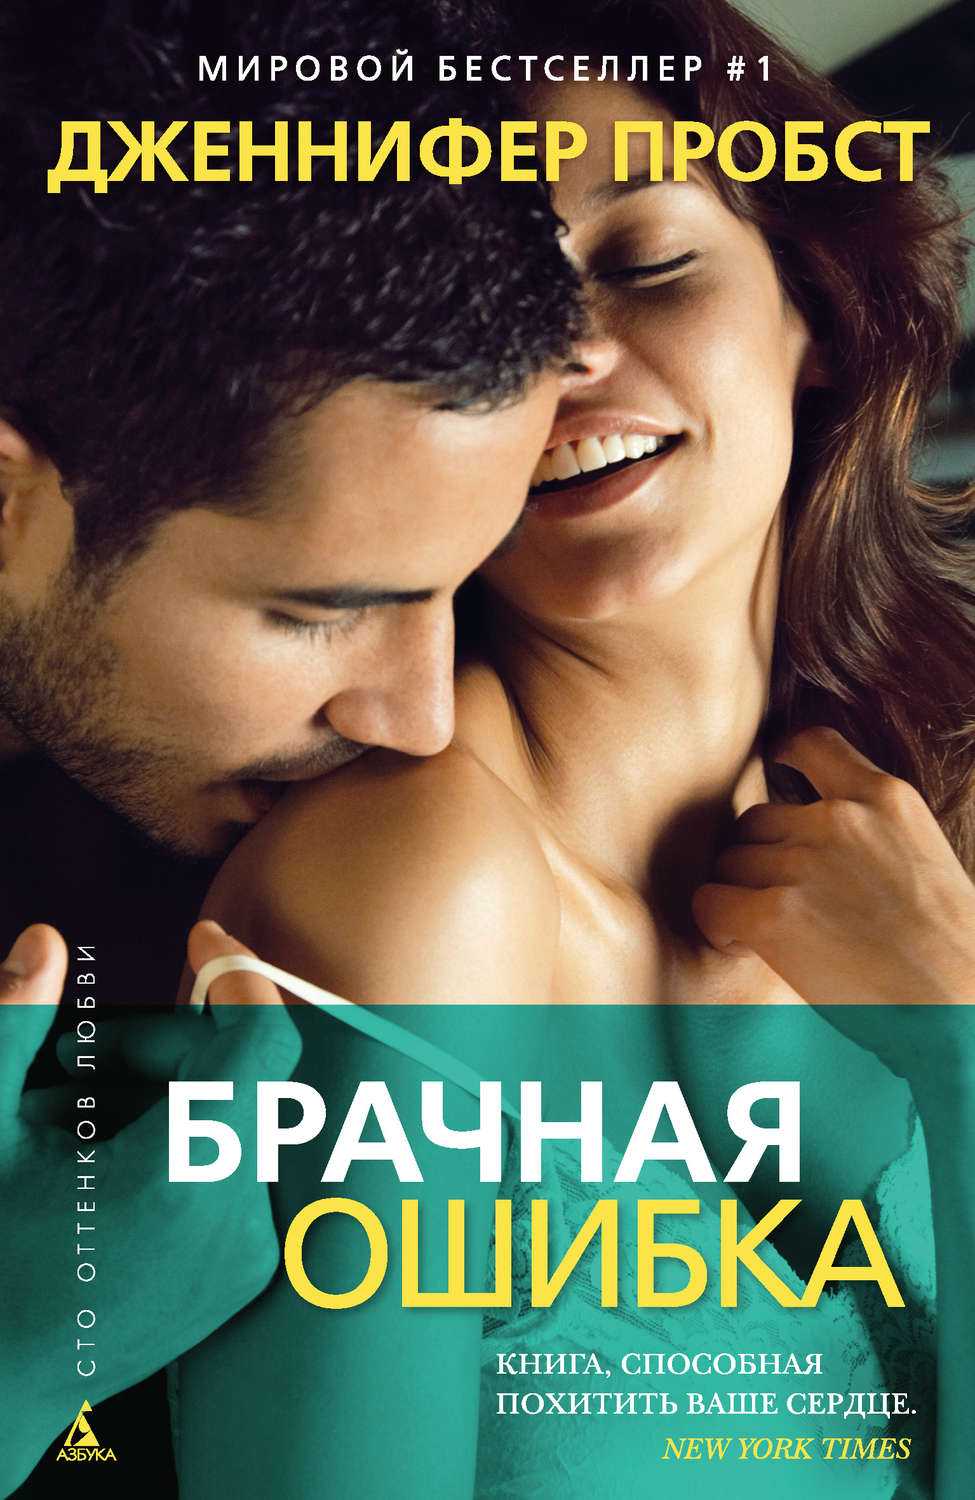 6 запрещенных романов 20 века, авторы которых нарушили сексуальное табу | brodude.ru